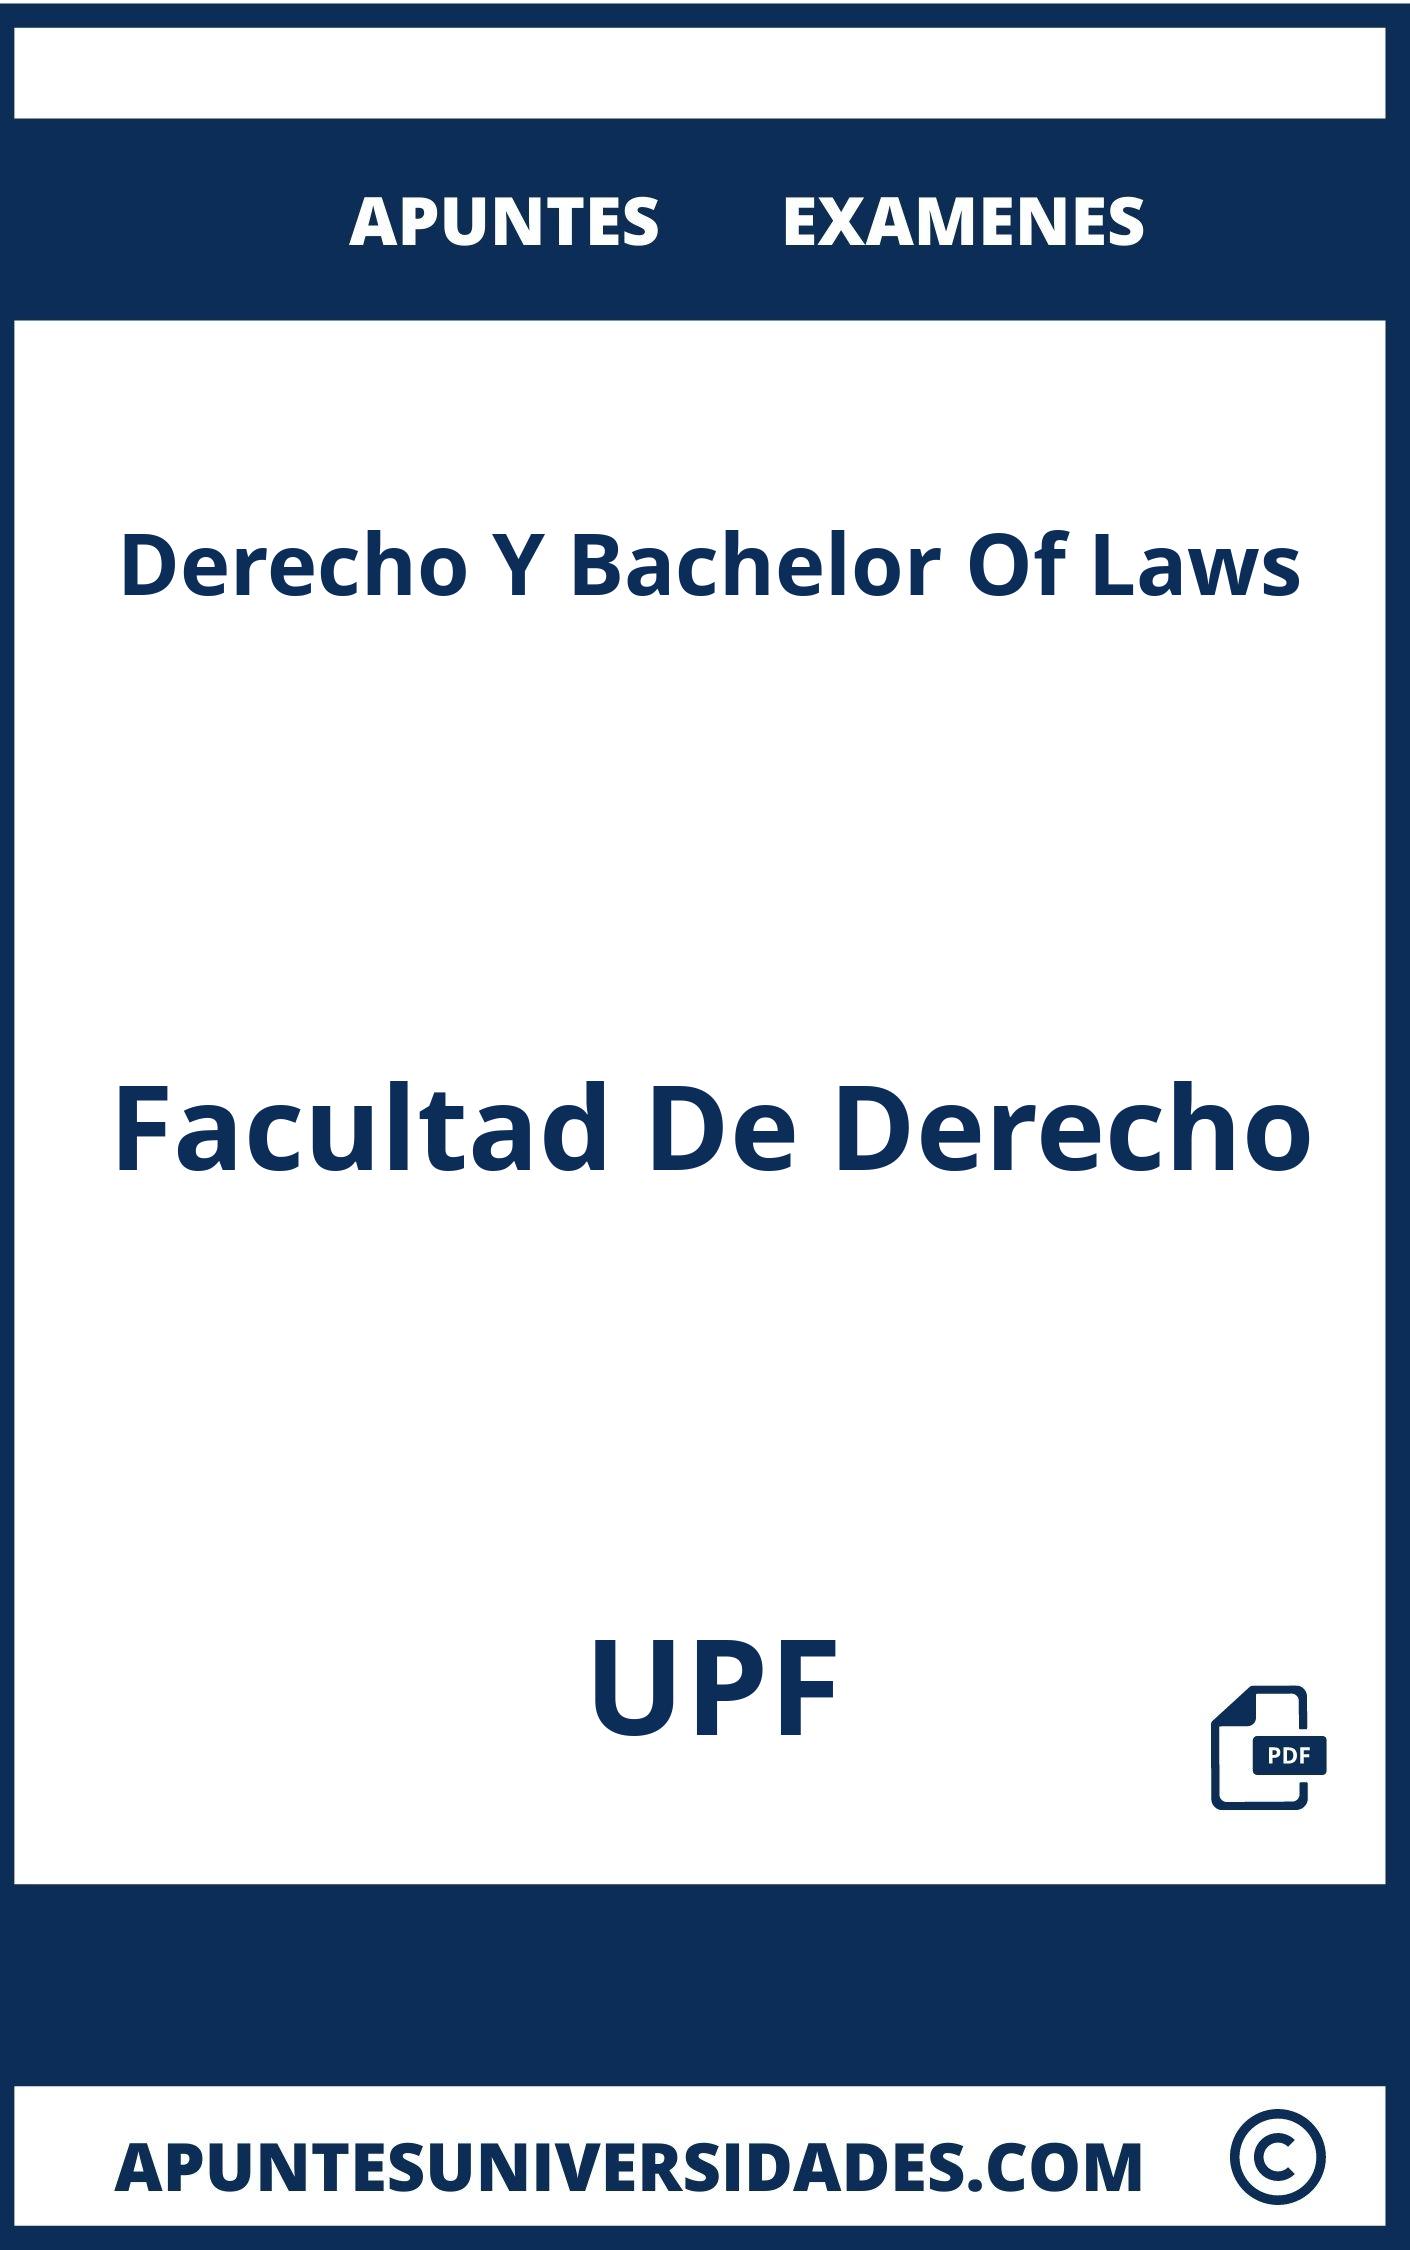 Apuntes y Examenes Derecho Y Bachelor Of Laws UPF